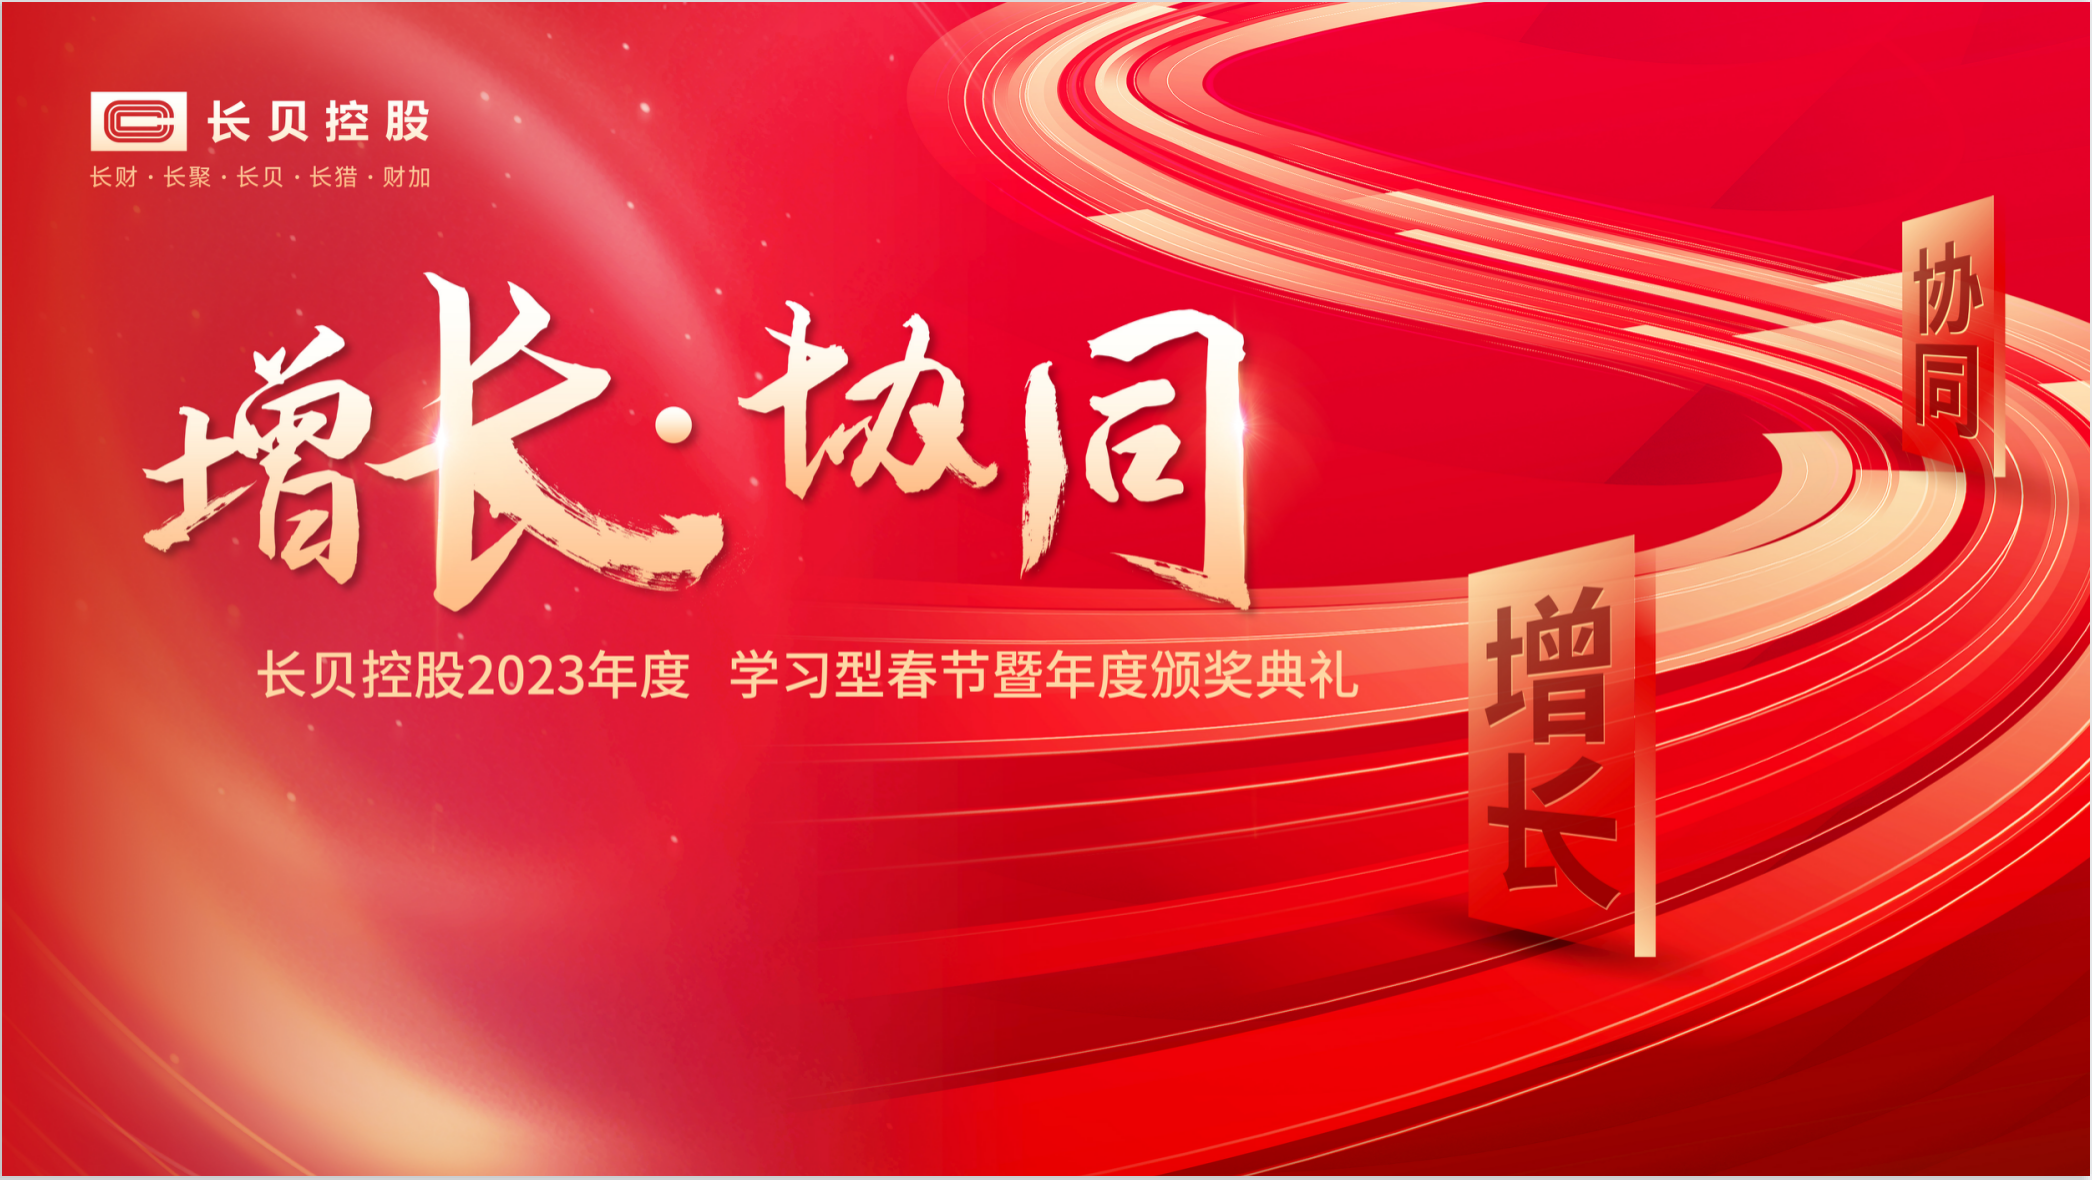 增长 · 协同 | 长贝控股2023年度 学习型春节暨年度颁奖盛典回顾